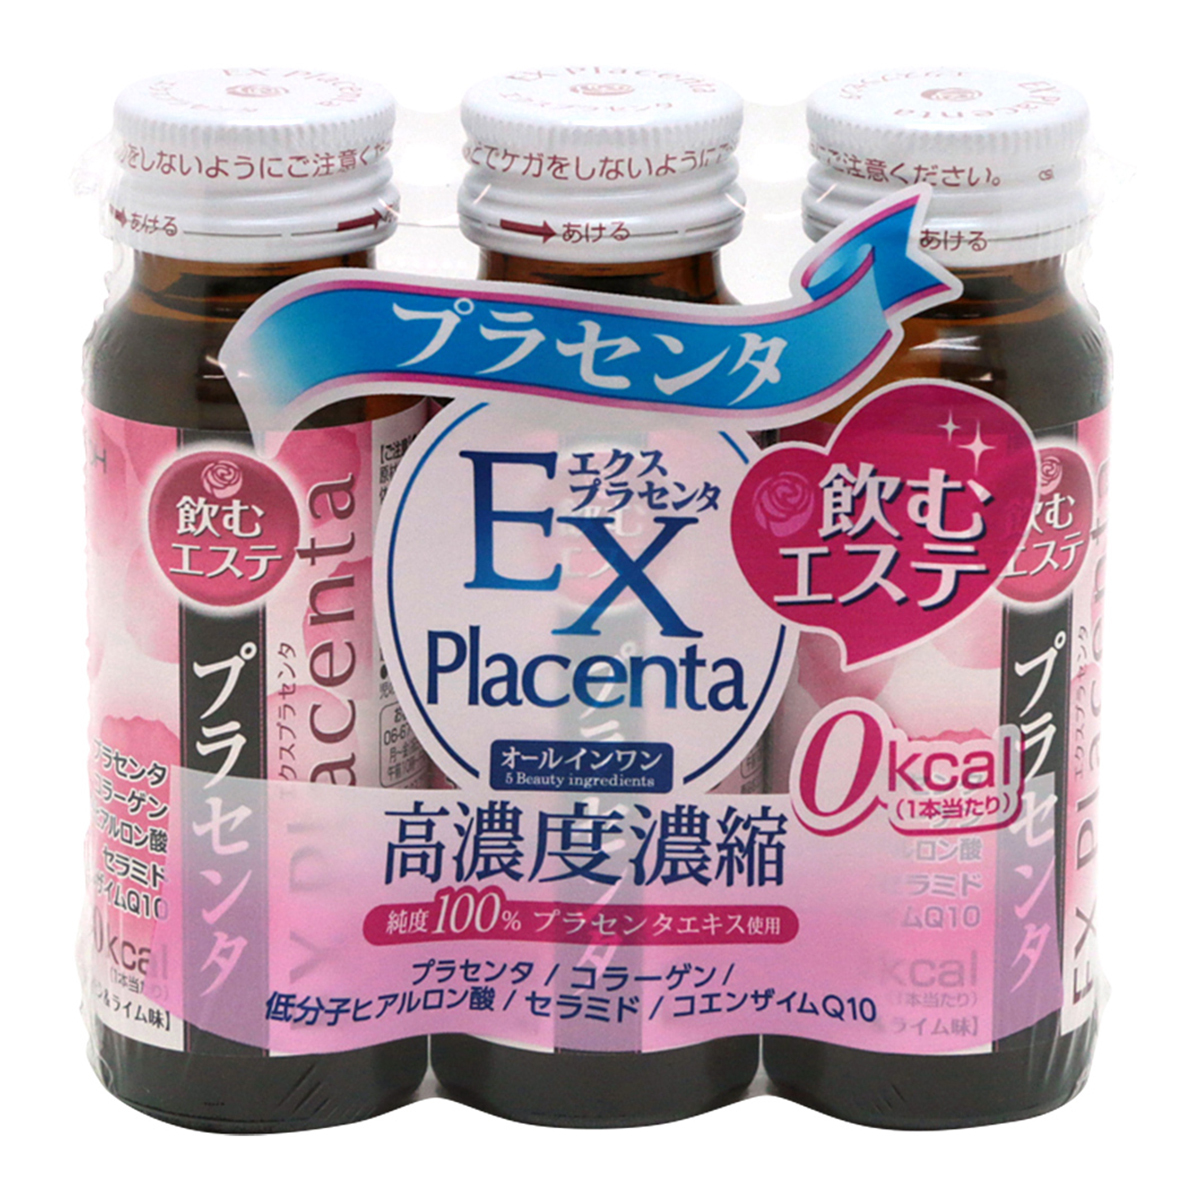 井藤漢方製薬 エクスプラセンタ 50ml×3本 瓶 プラセンタの商品画像